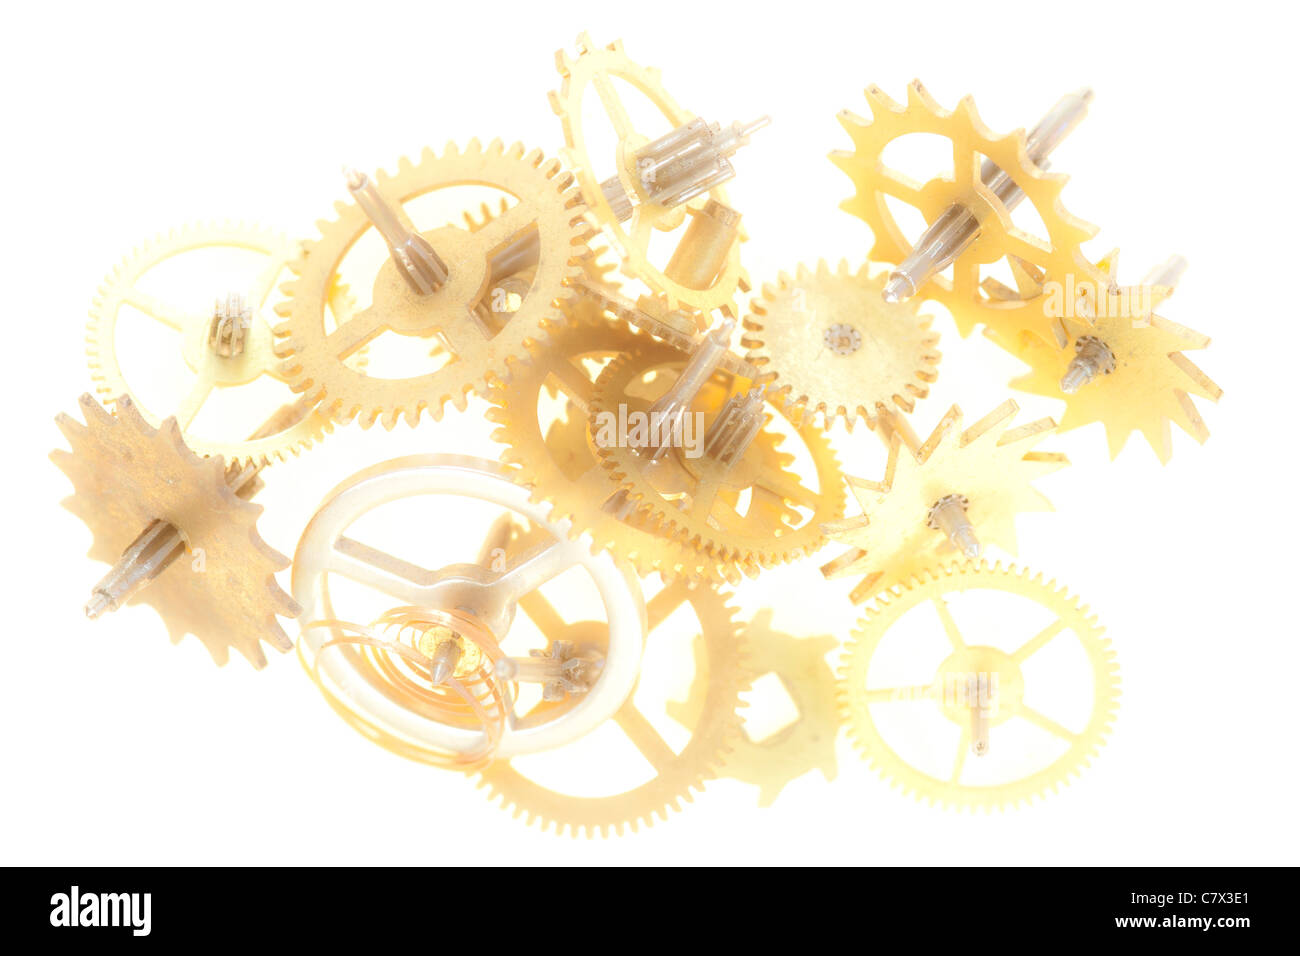 Abstraktes Bild der Uhrwerk Mechanismus - Zahnräder - Zahnräder Stockfoto